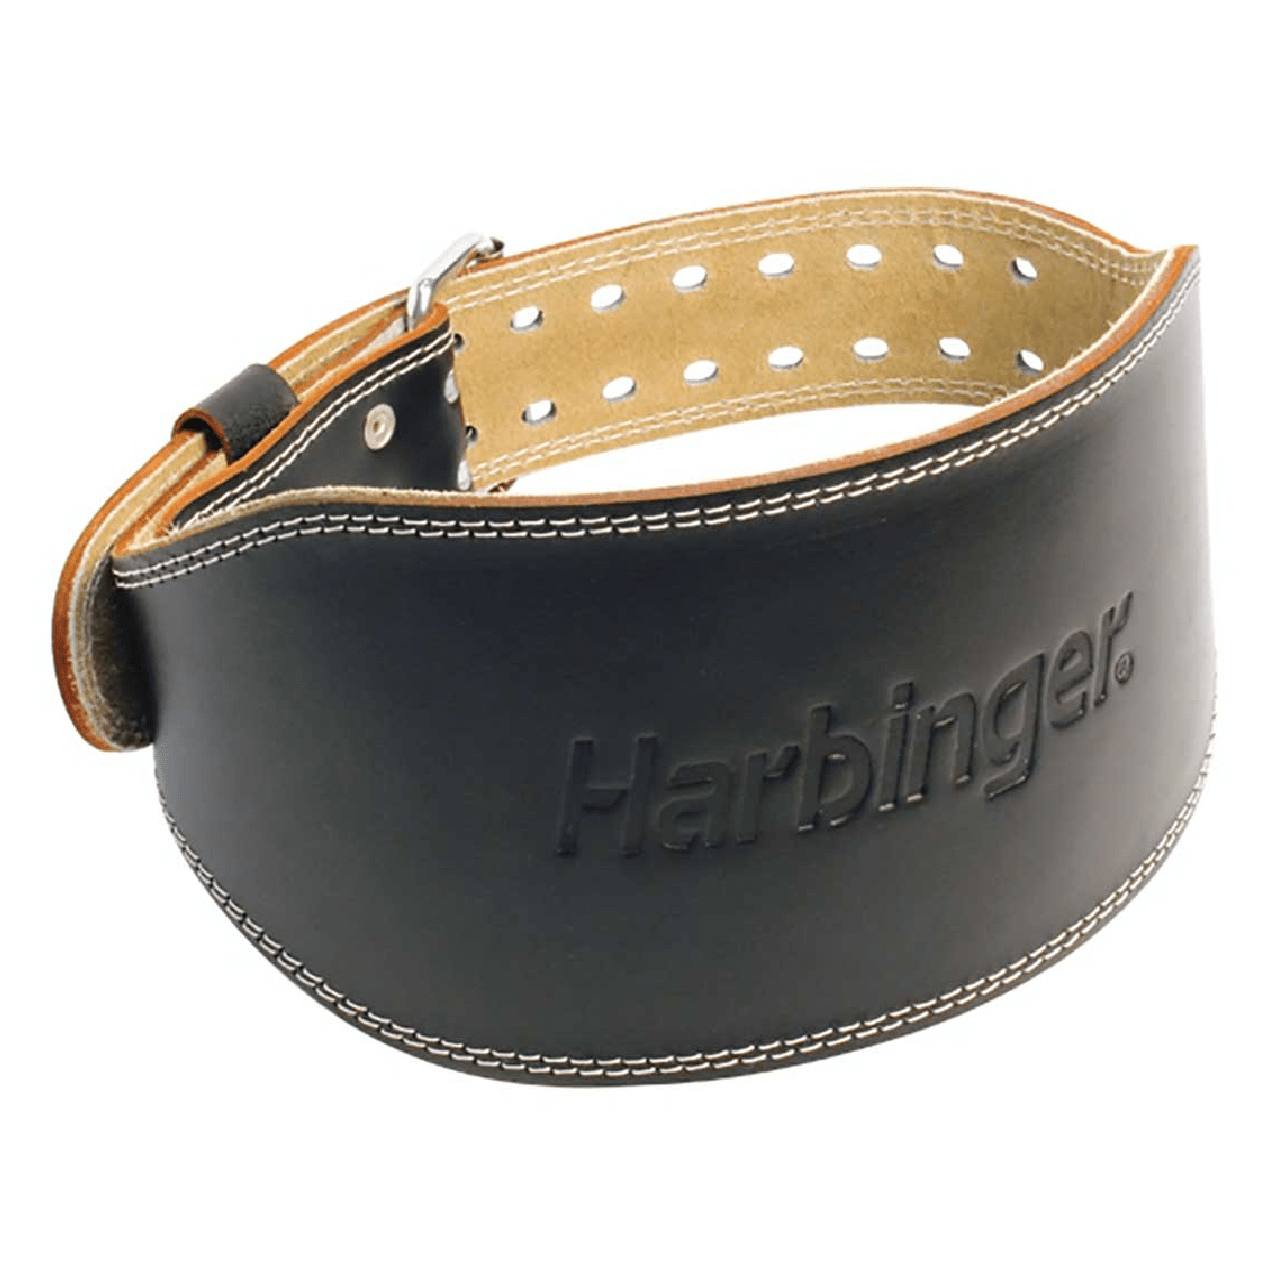 MeFitPro Harbinger Padded Leather Belt Black, 6"